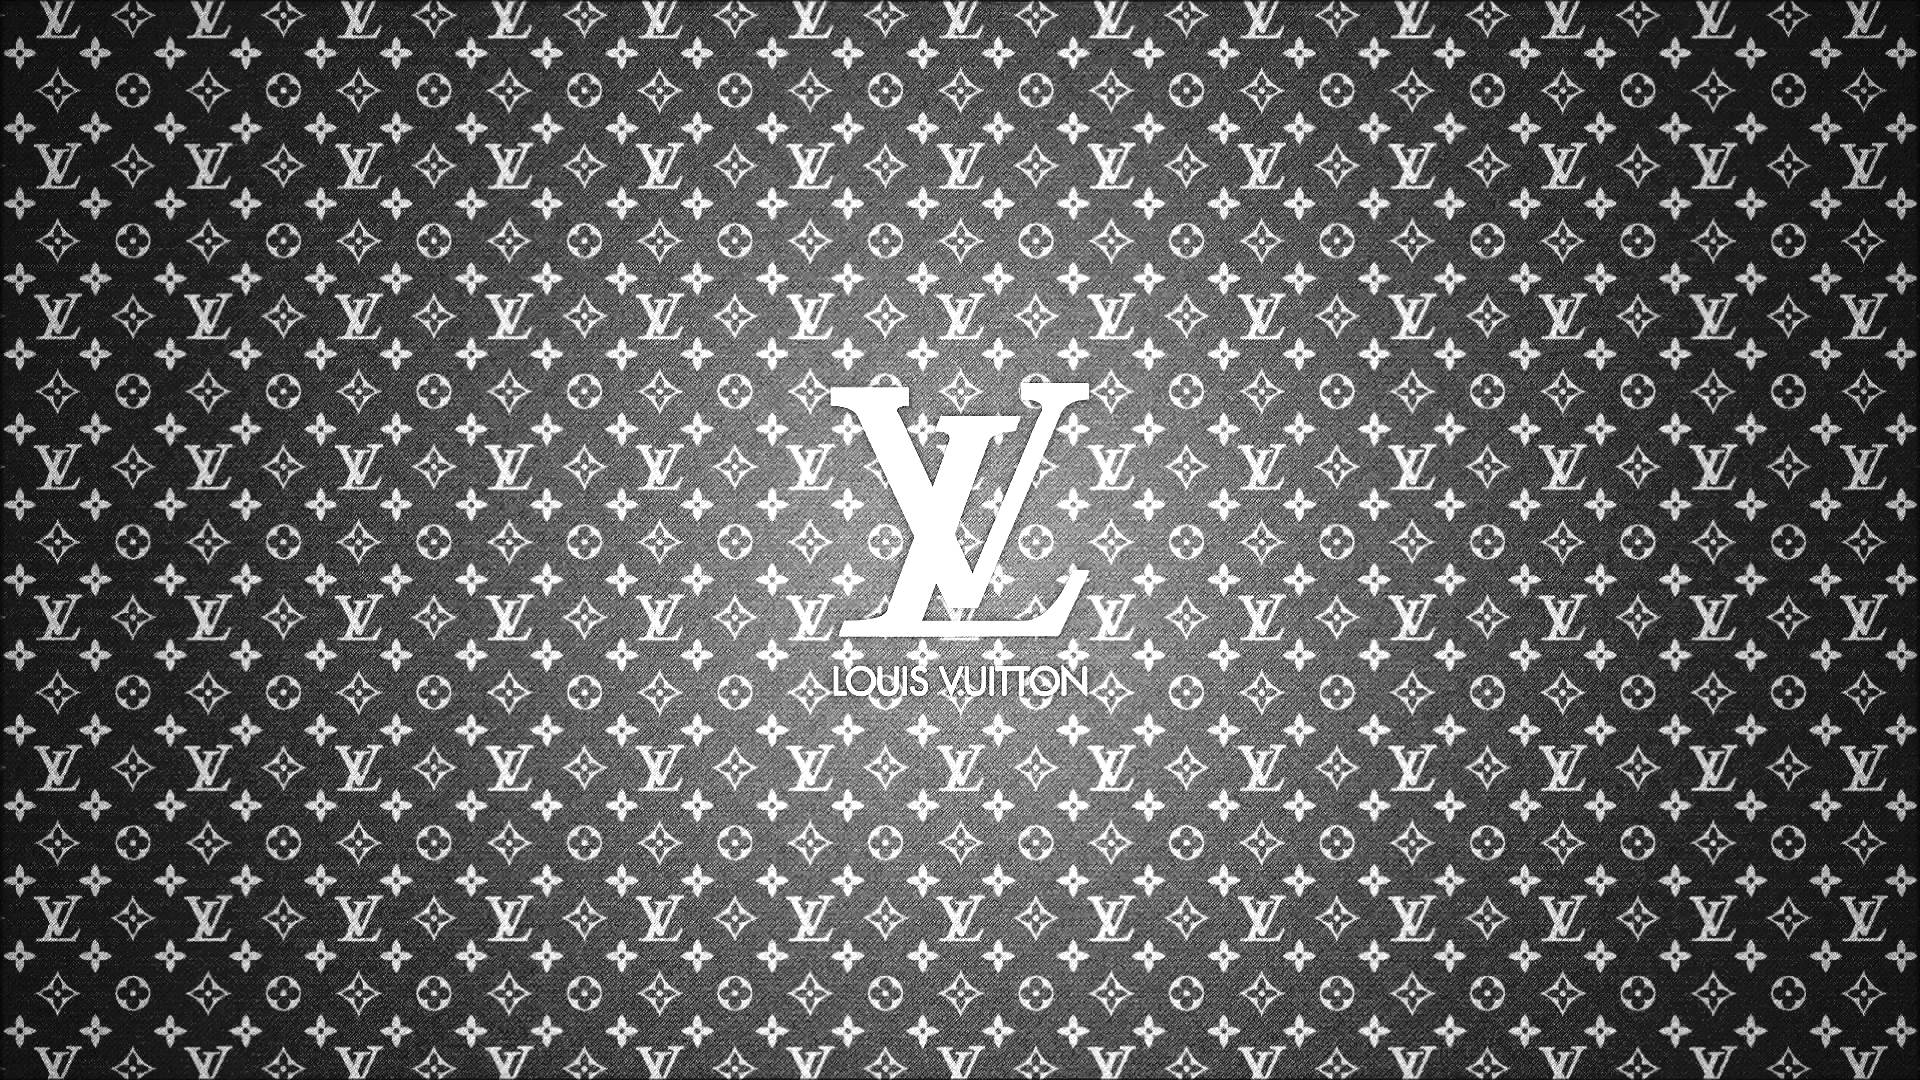 Với hình ảnh Louis Vuitton Background đẹp mắt, bạn sẽ có được một trải nghiệm thực sự độc đáo cho màn hình điện thoại của mình. Hãy cập nhật những hình nền Louis Vuitton để tạo sự khác biệt và độc đáo cho thiết bị của bạn.